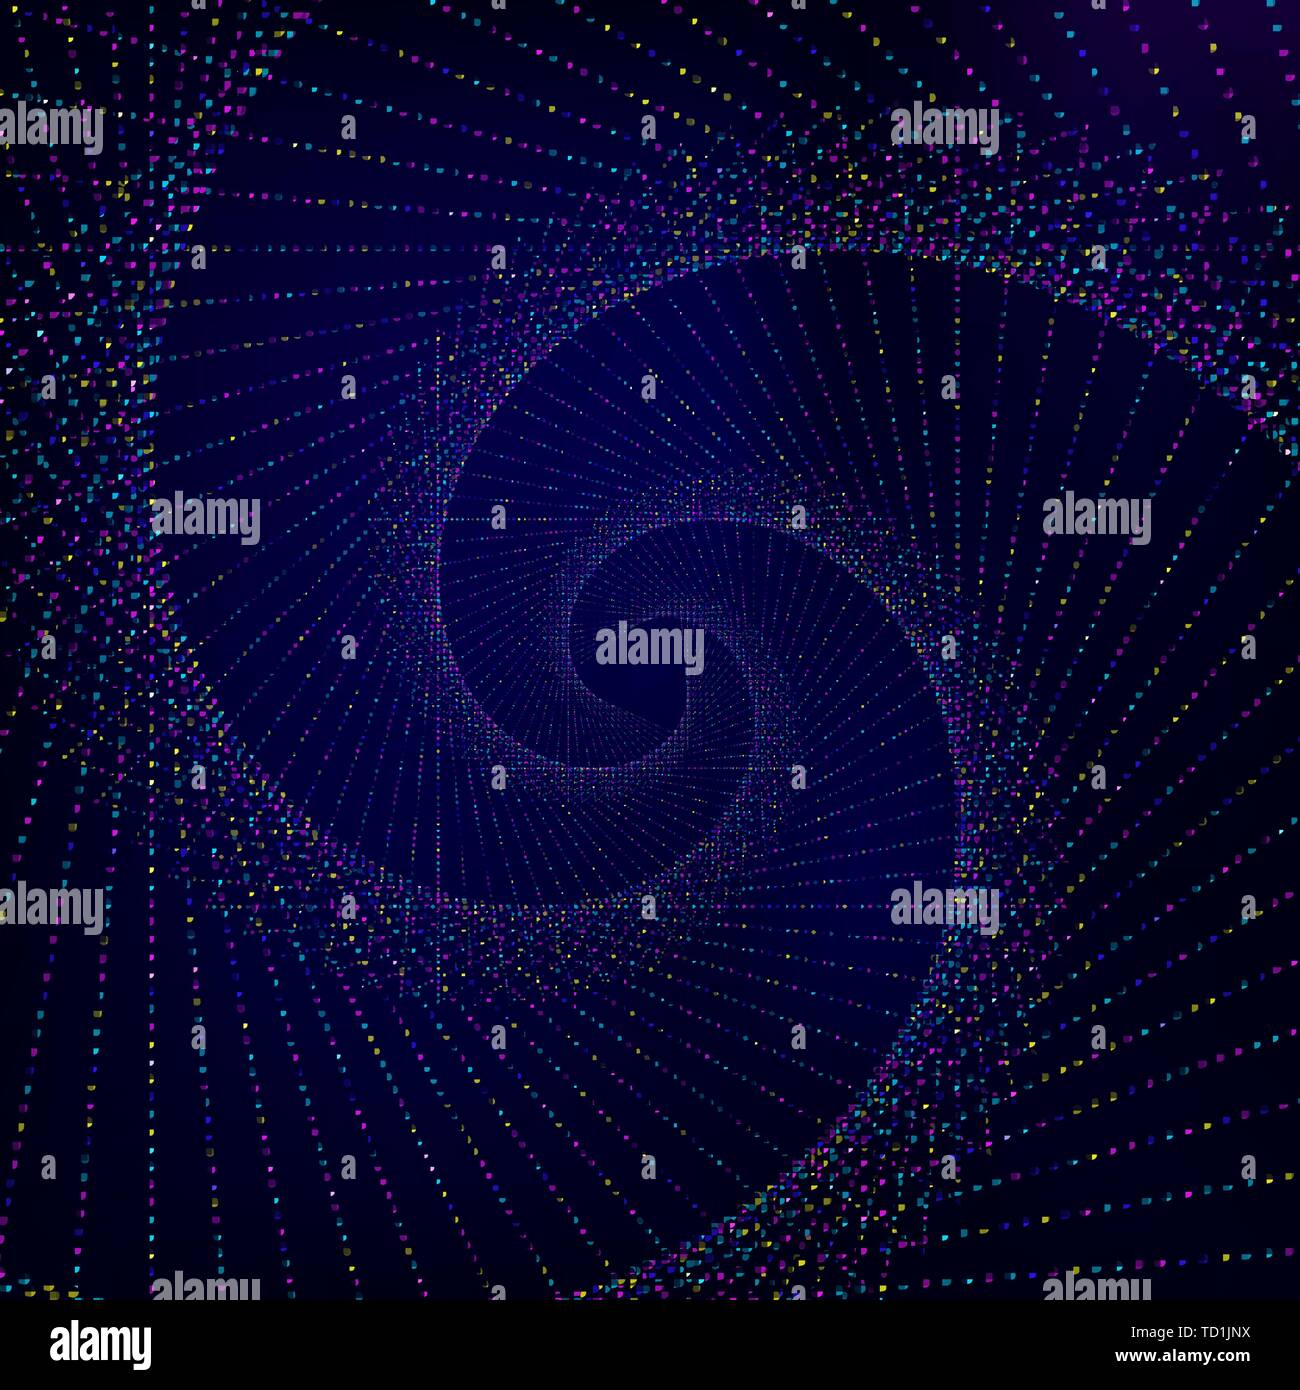 Zusammenfassung Hintergrund. Dark Blue Tapete mit Spirale aus leuchtend bunte Punkte gemacht. Vector Illustration. Stock Vektor